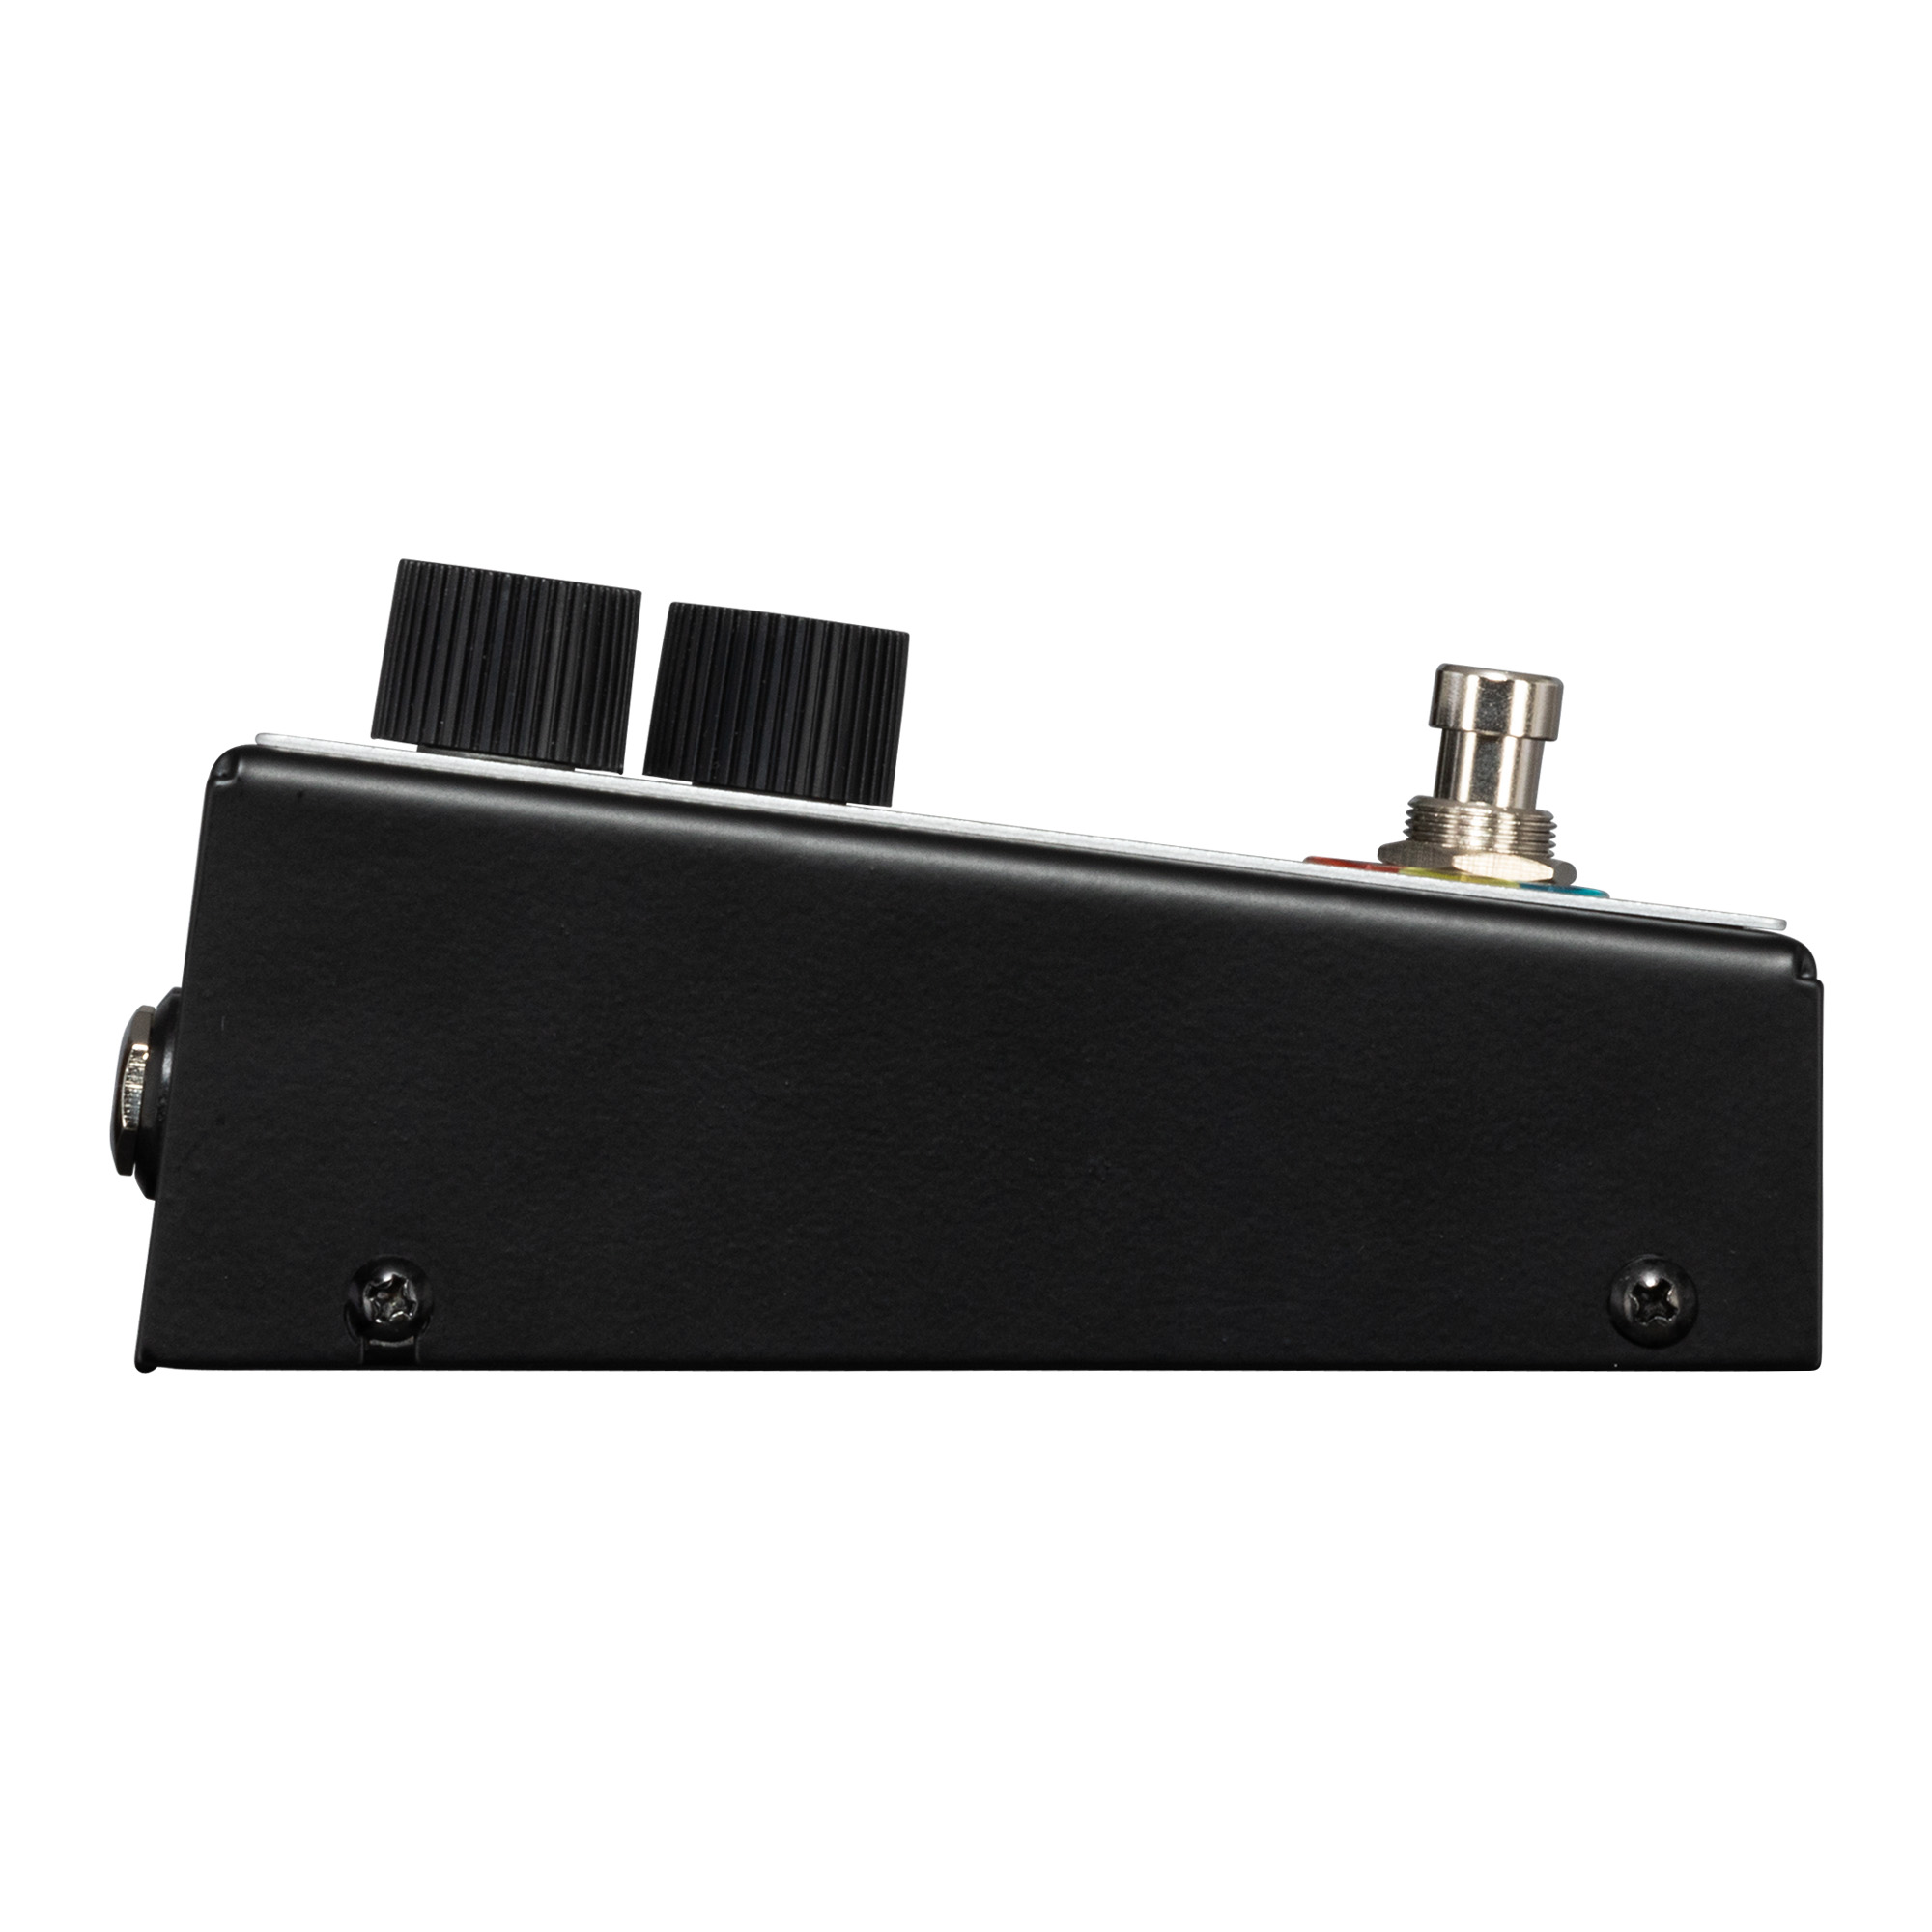 Maestro Envelope Filter - Compressor, sustain & noise gate effect pedal - Variation 3